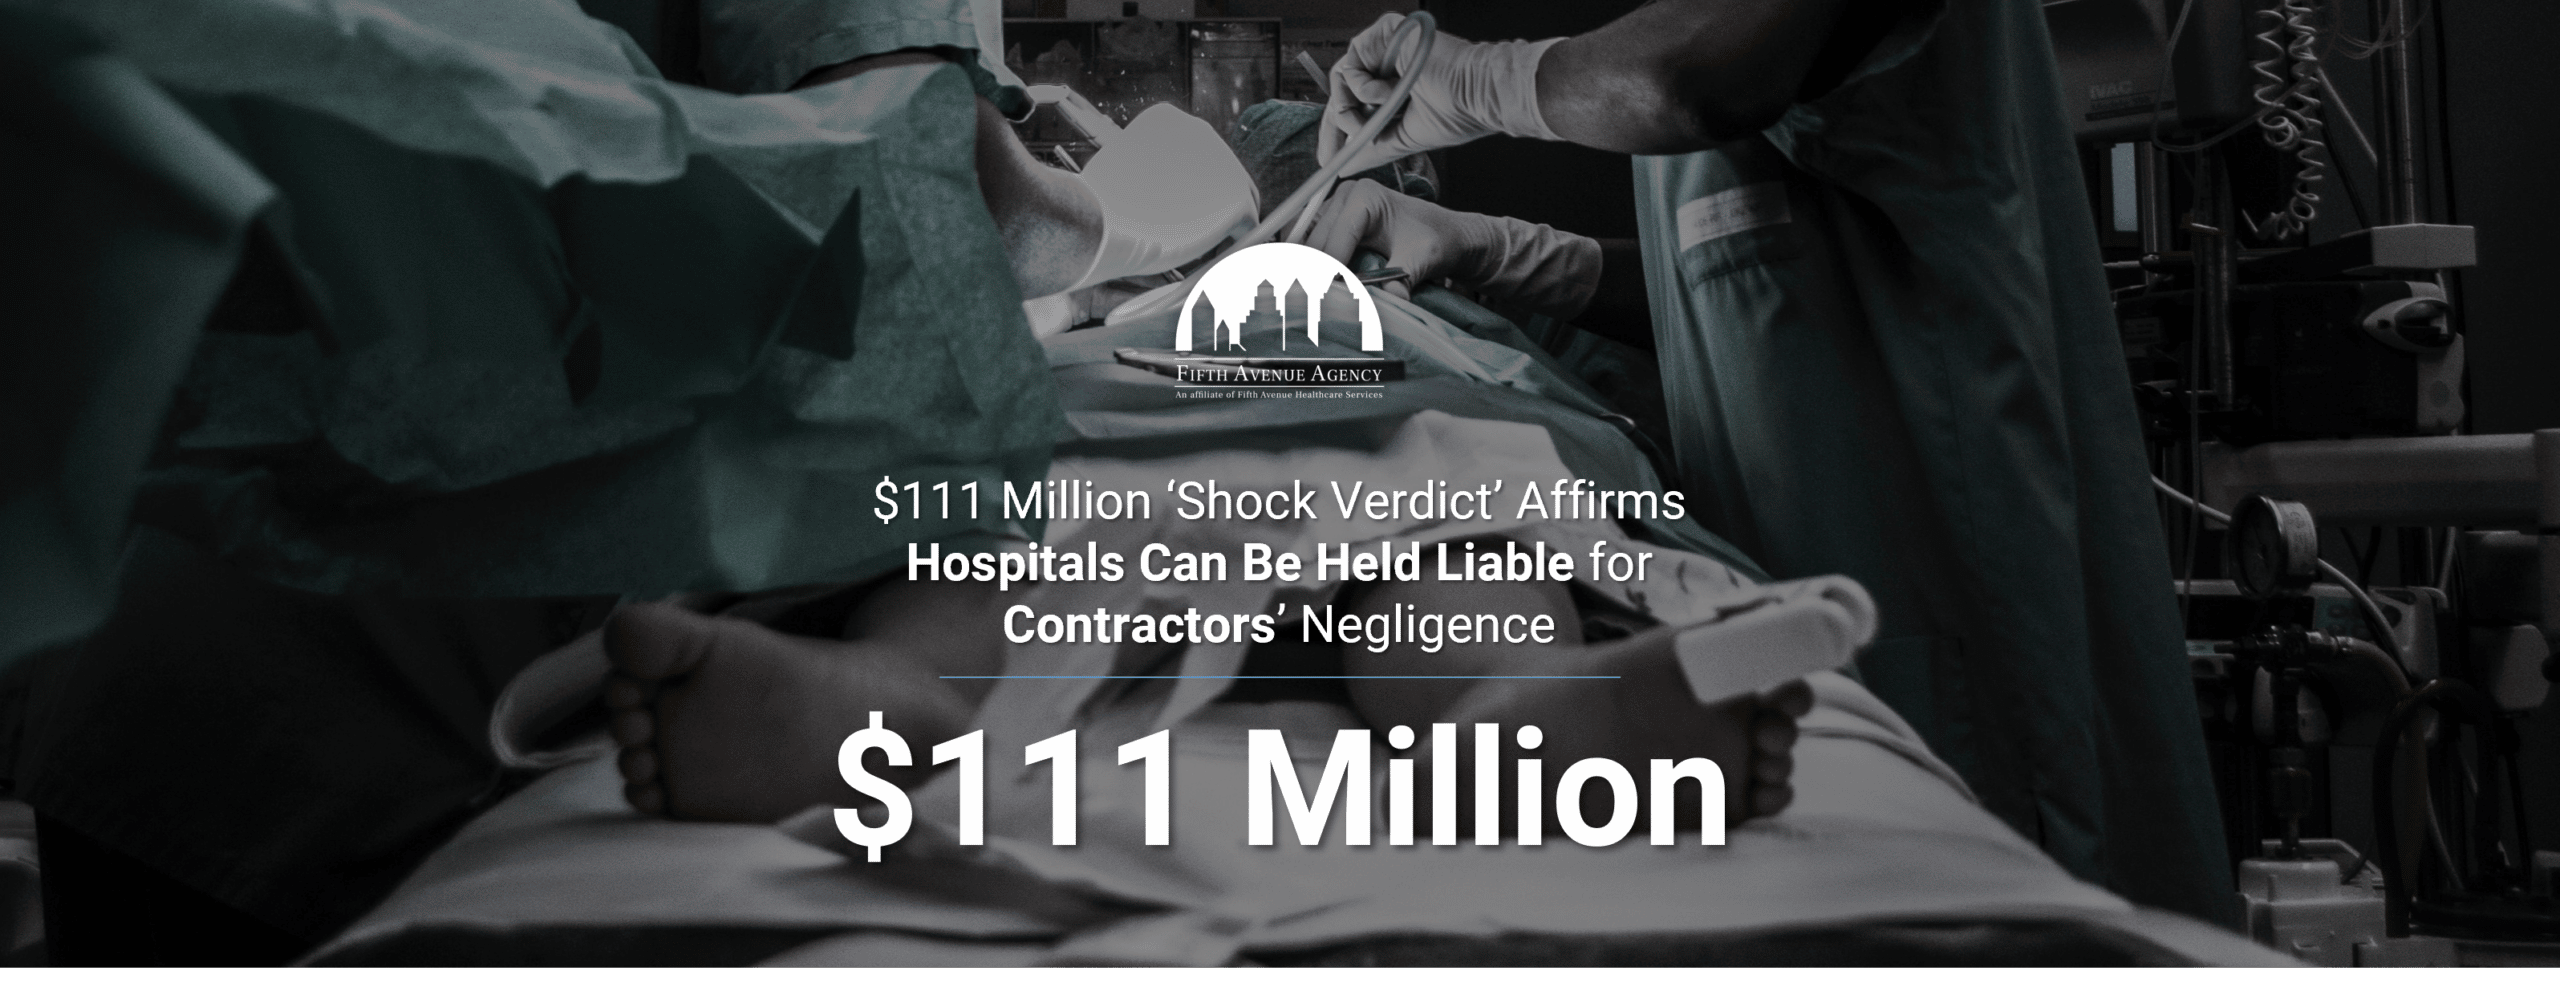 $111 Million Dollar Medical Malpractice Shock Verdict